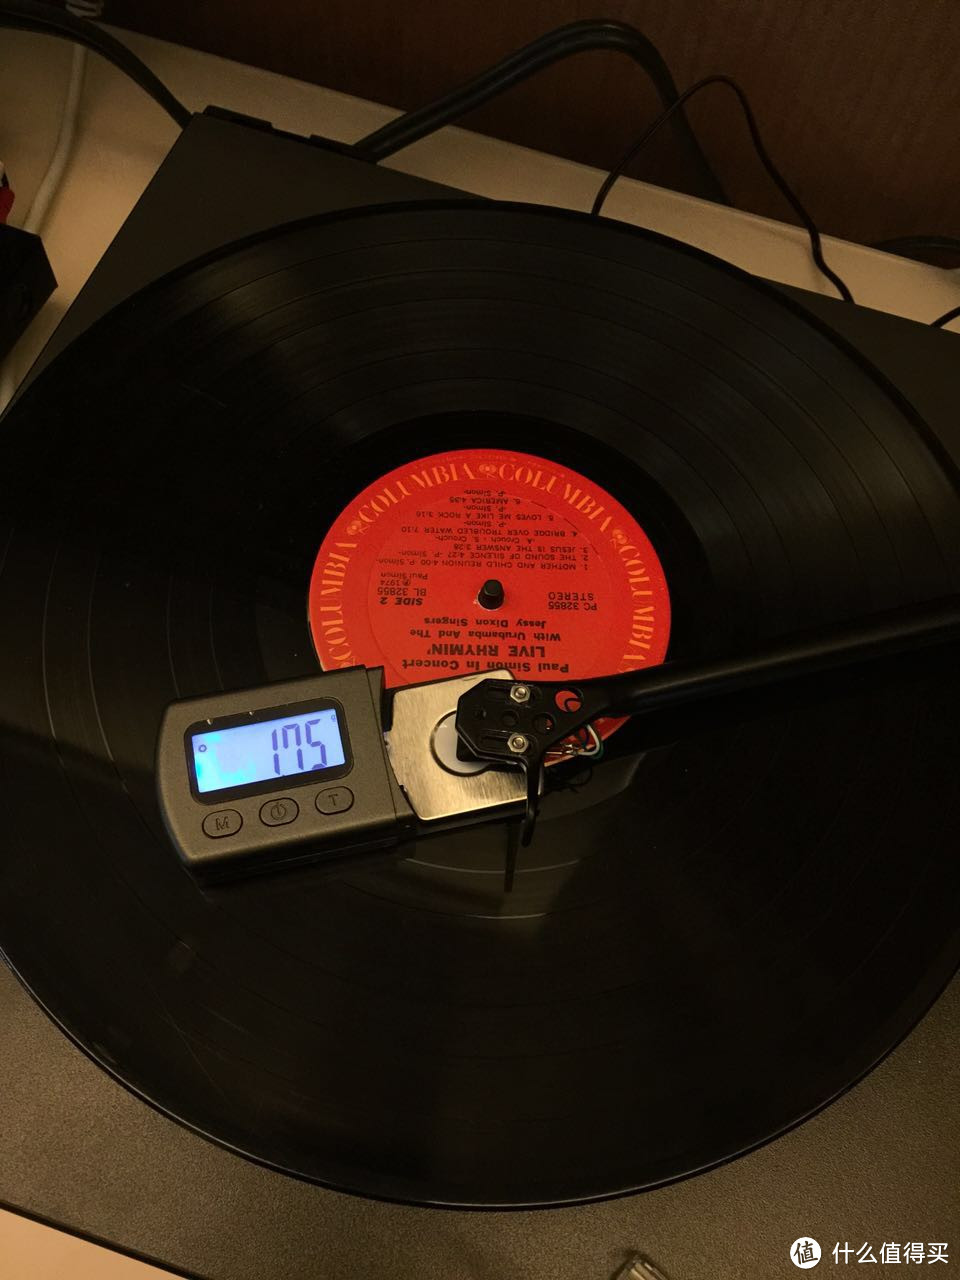 上个世纪的音乐记忆：爱上黑胶唱片